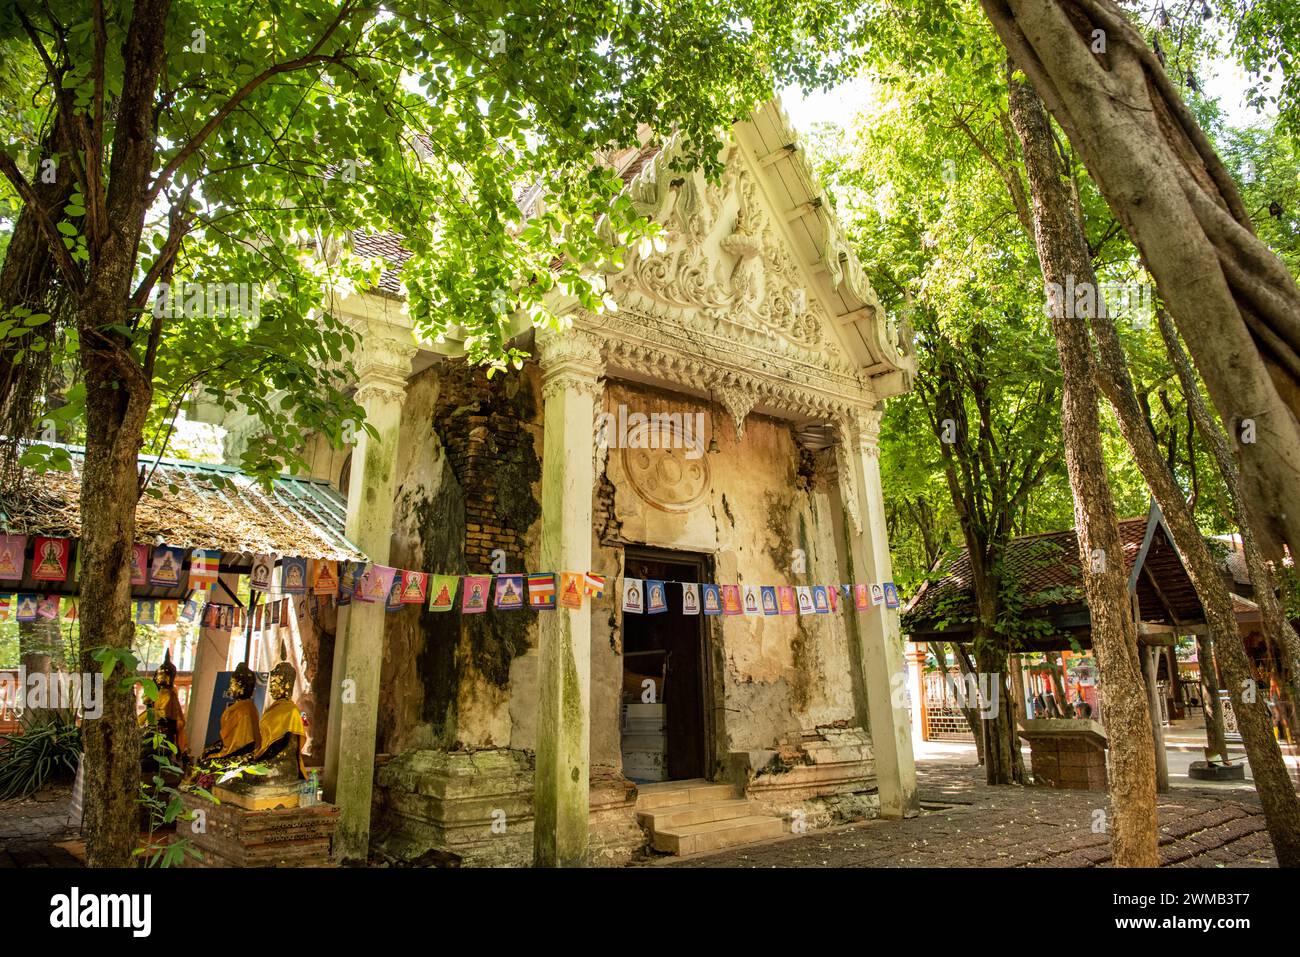 L'ancien temple de Wat Pho Bang Khla près de la ville de Mueang Chachoengsao dans la province de Chachoengsao en Thaïlande. Thaïlande, Chachoengsao, 4 novembre 202 Banque D'Images